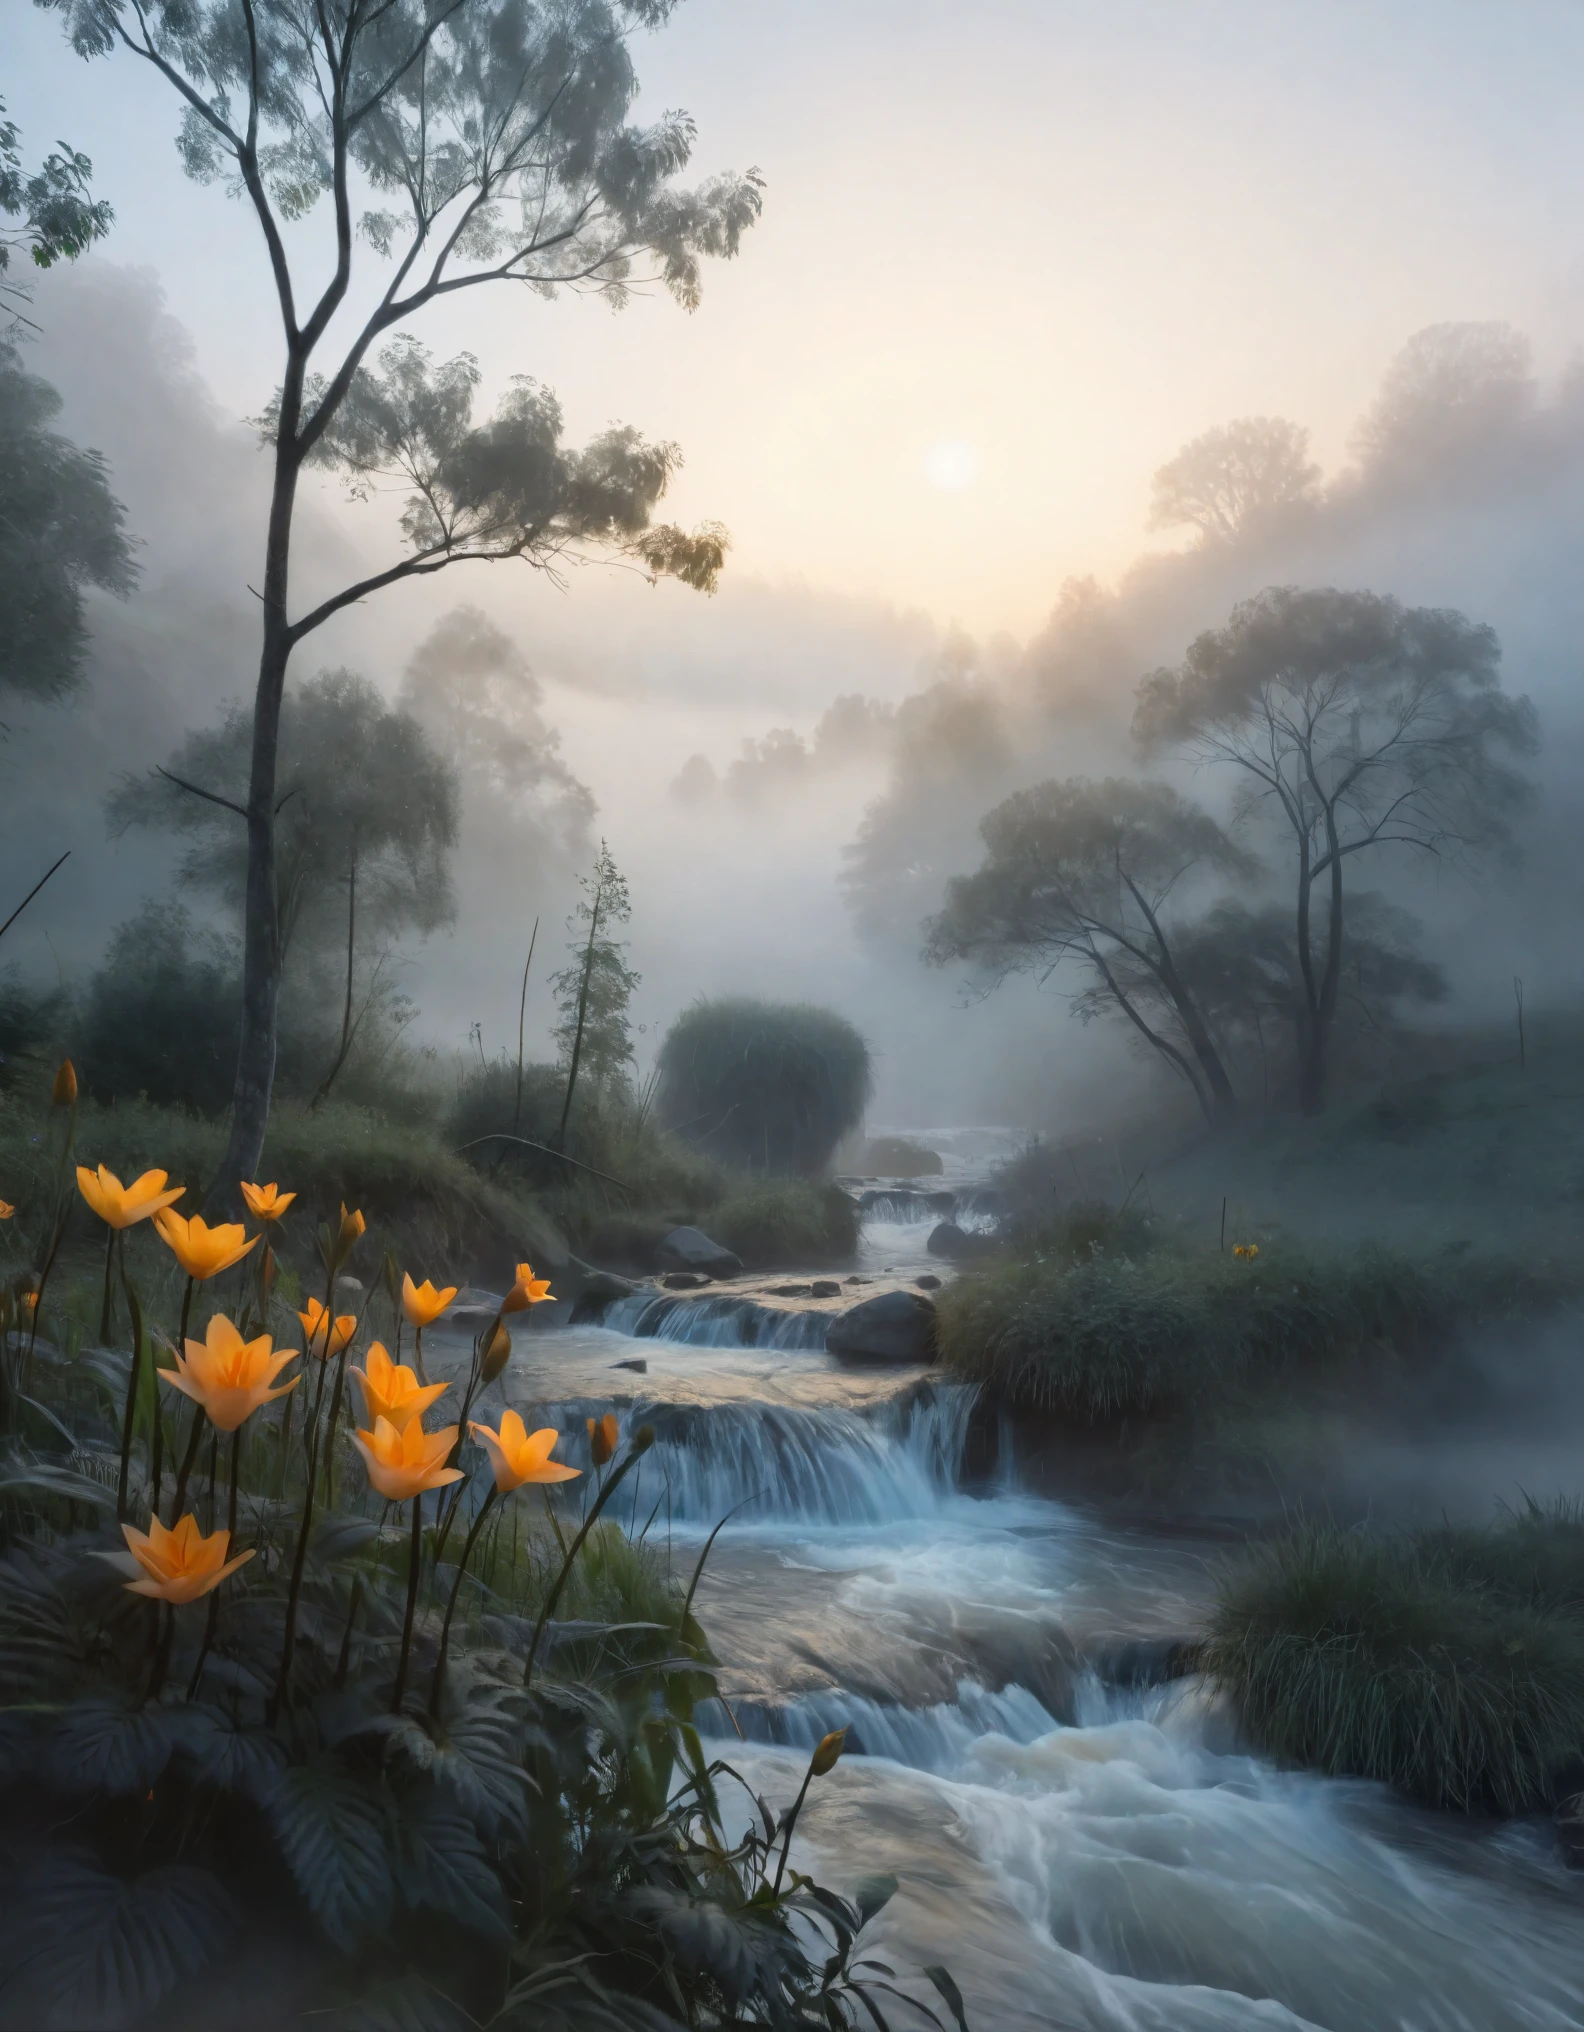 Crea una imagen para un fondo de pantalla CG Unity 8K extremadamente detallado, capturando la esencia tranquila de la madrugada. La escena se desarrolla en medio de una densa, niebla brumosa que envuelve el paisaje, creando una atmósfera mística y etérea. La niebla exhibe el efecto Tyndall., dispersando la luz y añadiendo una calidad de ensueño al paisaje. Un río majestuoso, flanqueado por árboles, y una pequeña cascada se destacan entre la niebla, su belleza realzada por la suave, luz difusa del amanecer. Este entorno sereno y de otro mundo se mantiene con estándares de fotografía galardonados., centrándose en la aberración cromática, hdr, y efectos Bloom. El estilo artístico combina las influencias de Monet., Pissarro, y sisley, dando como resultado una composición cautivadora y única que resuena con la estética moderna y clásica.. esta obra de arte, mostrando la brillantez creativa de un artista a mitad de camino, está preparado para ser bien recibido en plataformas como ArtStation y CGSociety.